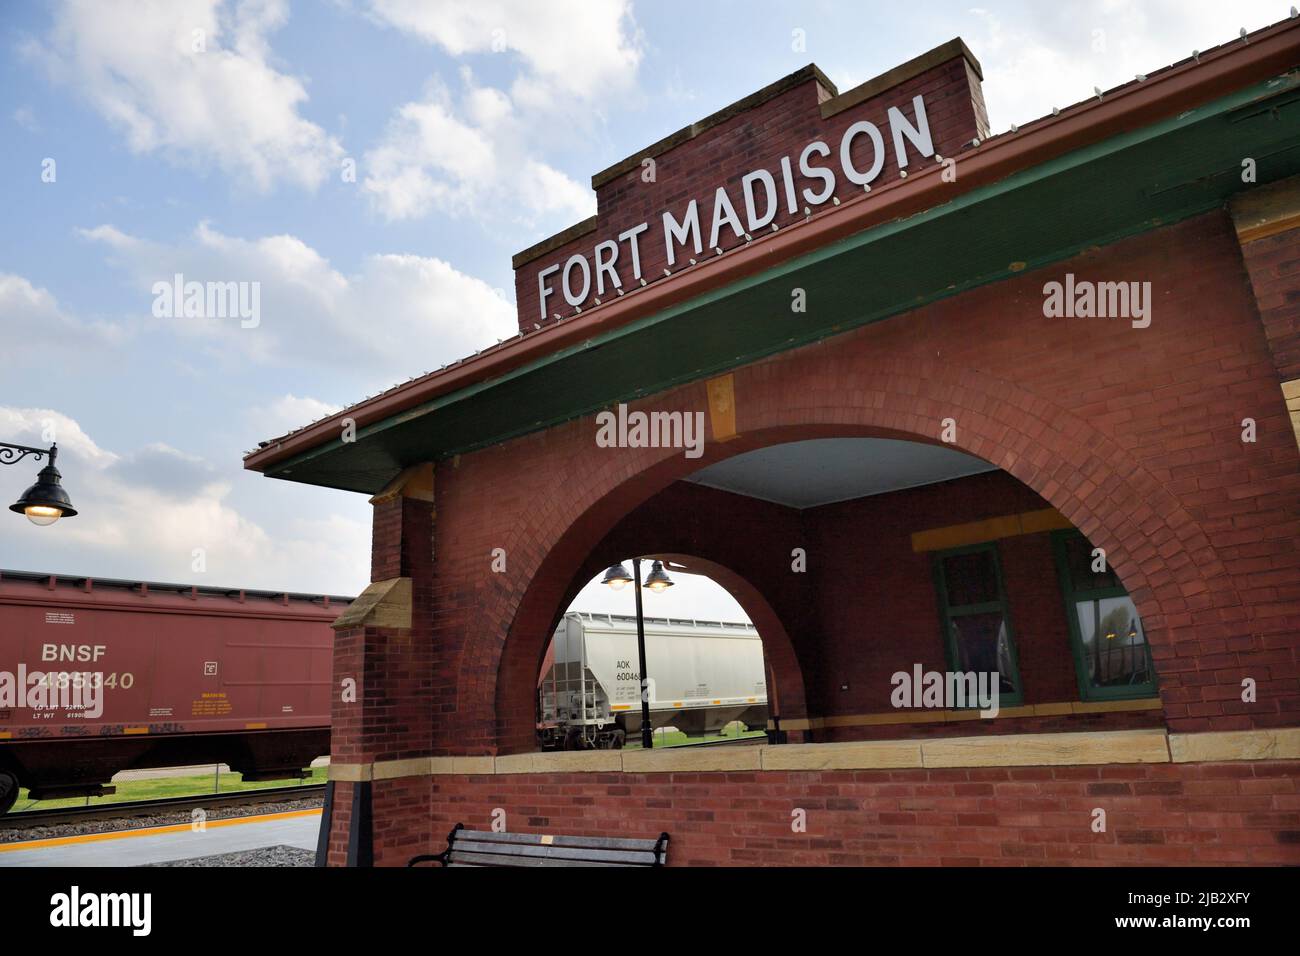 Fort Madison, Iowa, États-Unis. Un vestige du passé, le dépôt de chemin de fer Atchinson, Topeka et Santa Fe. Banque D'Images